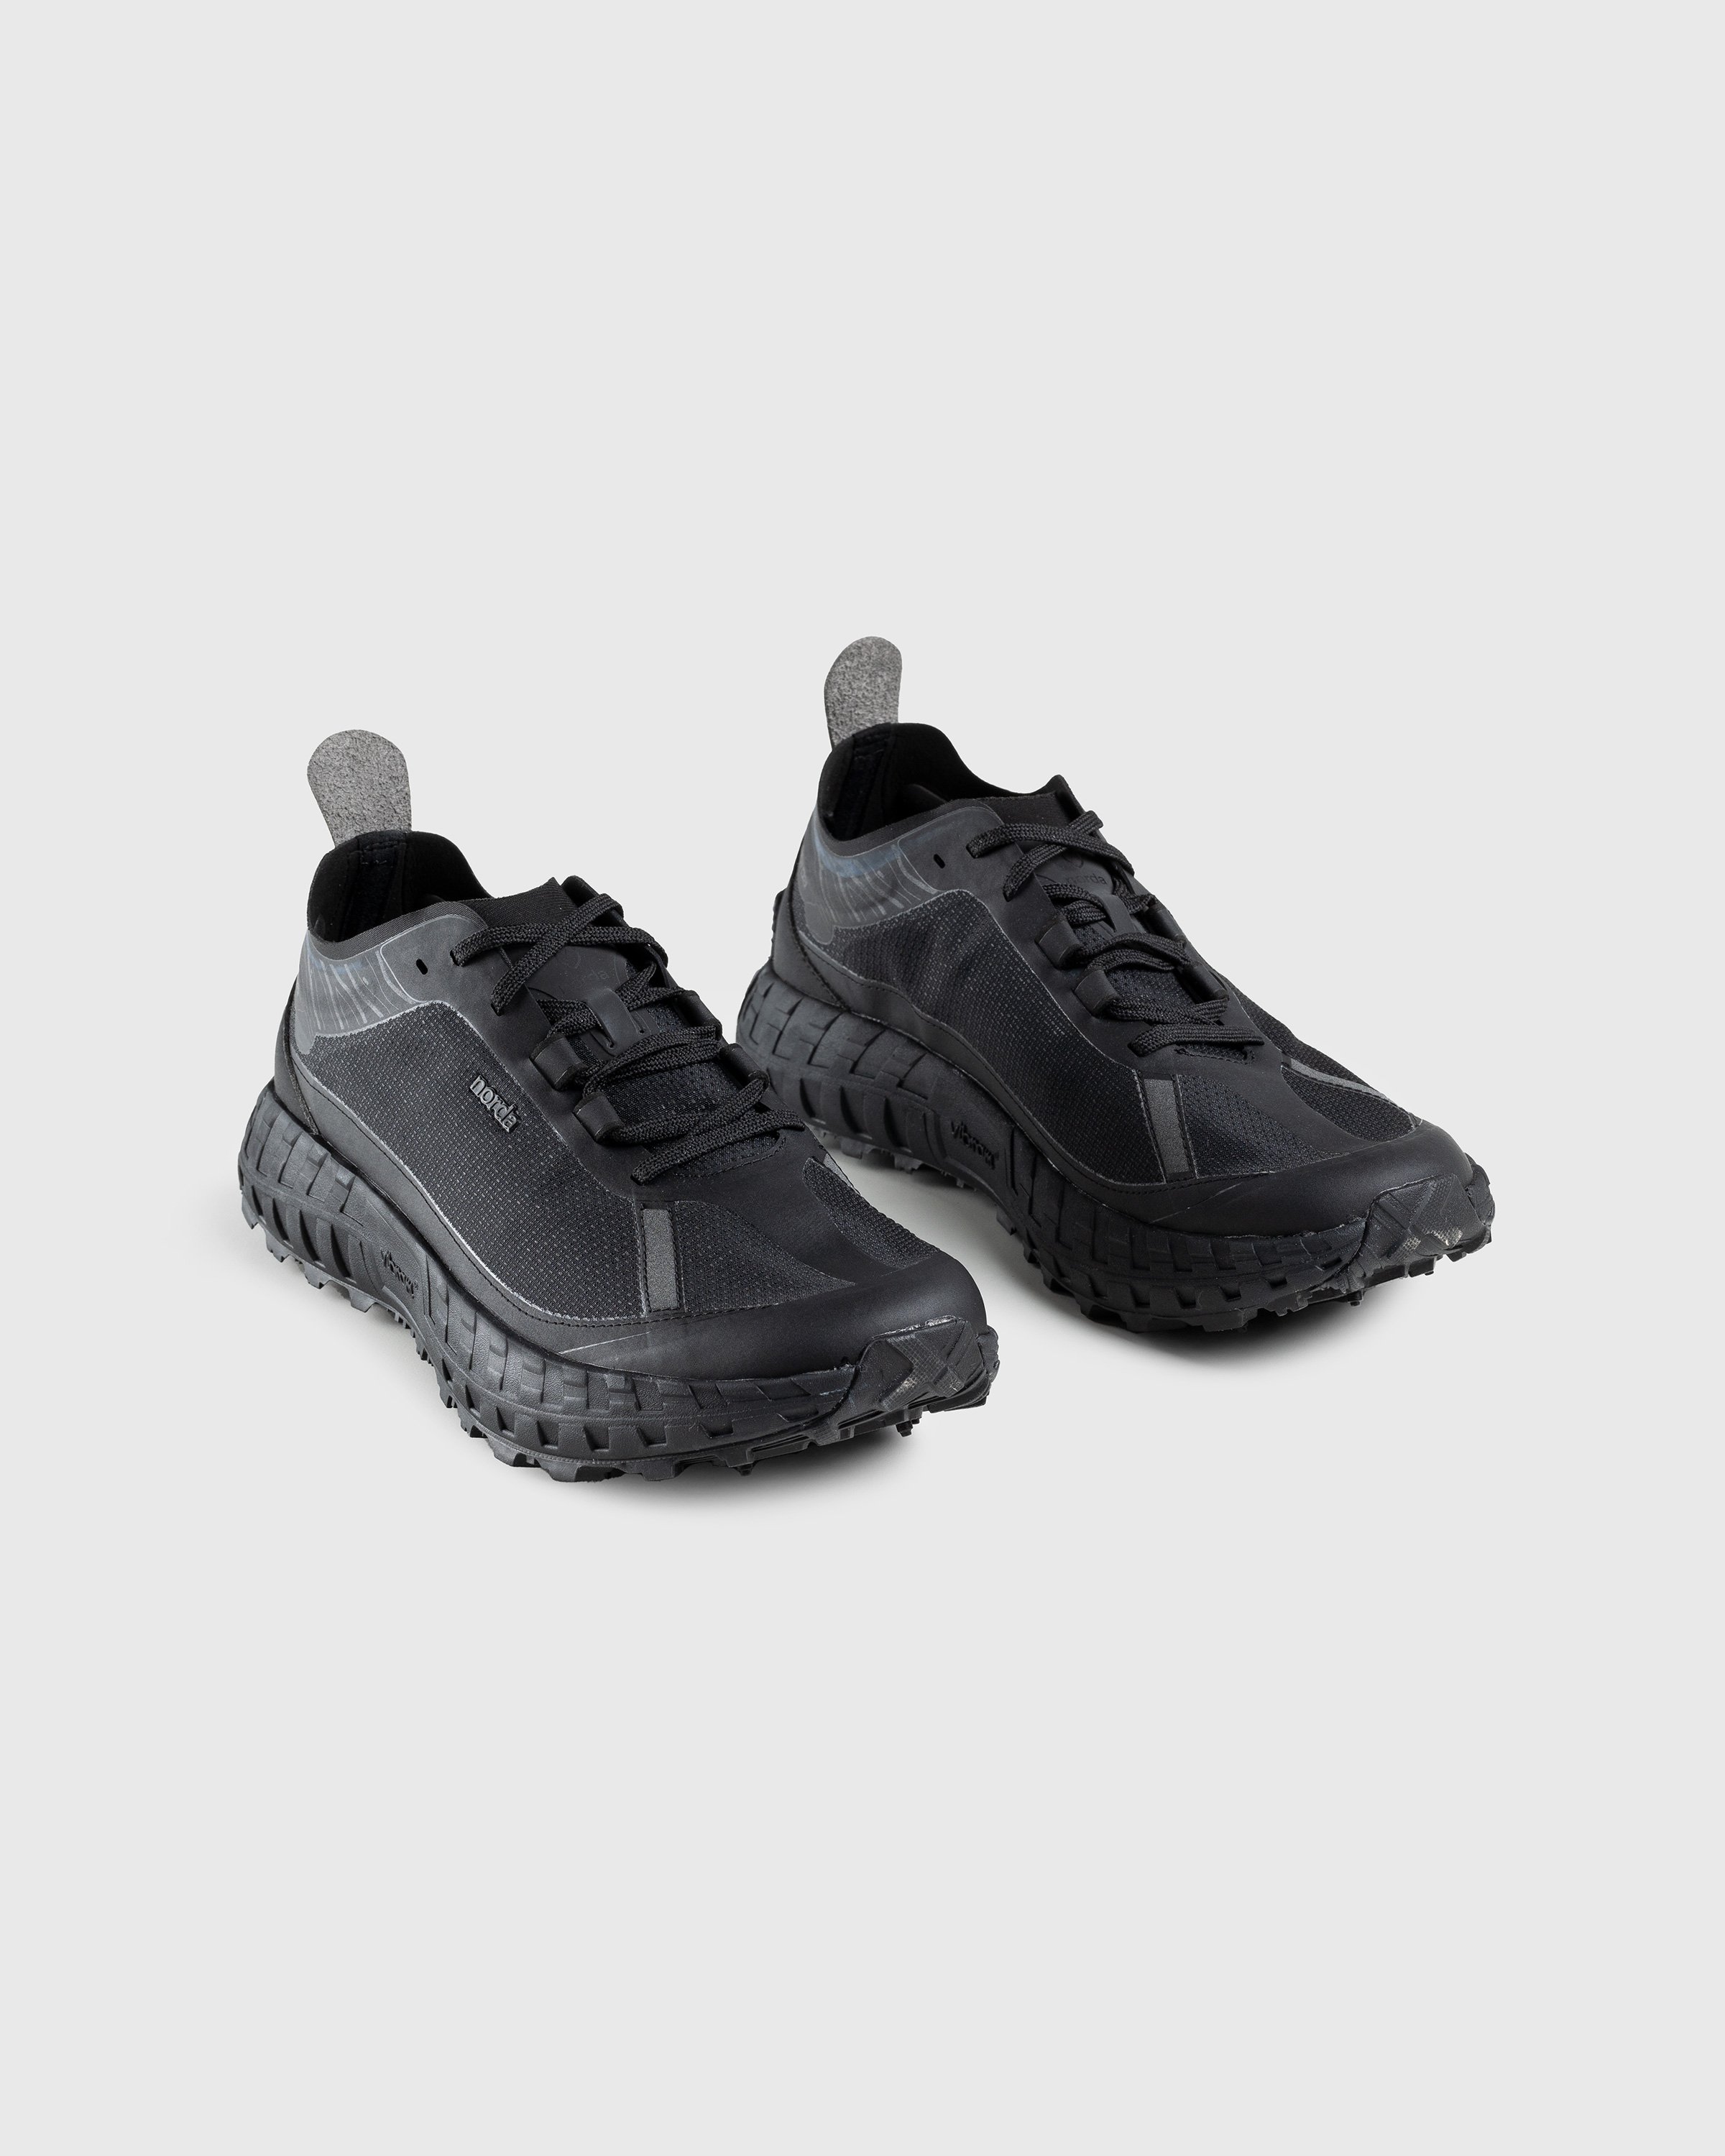 Norda - 001 W Stealth Black - Footwear - Black - Image 3